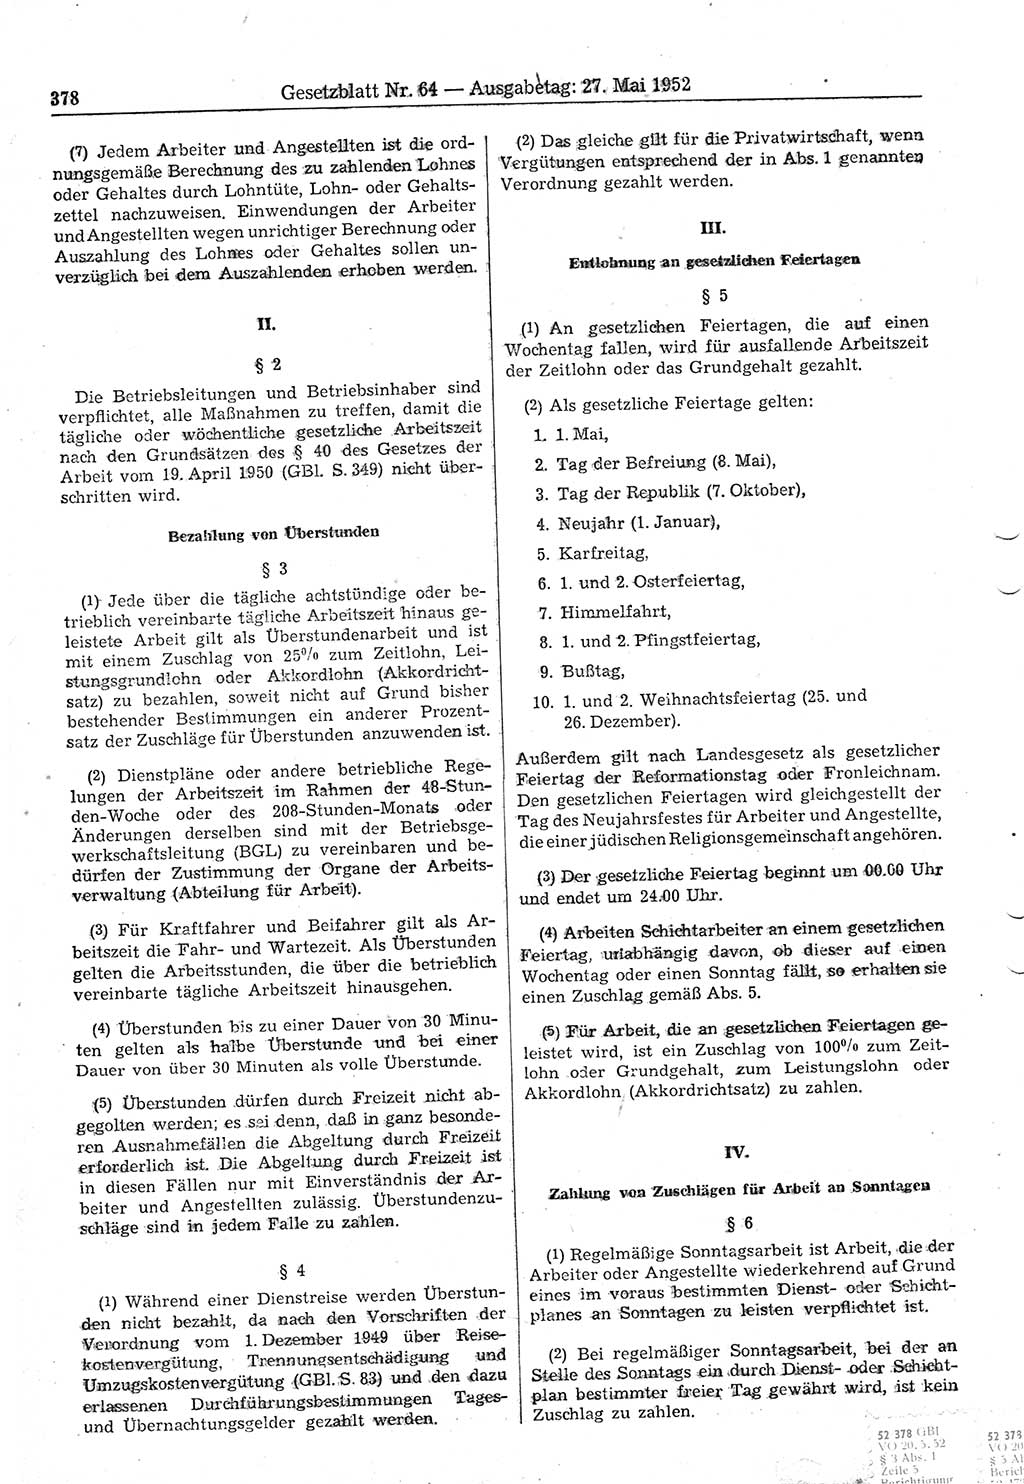 Gesetzblatt (GBl.) der Deutschen Demokratischen Republik (DDR) 1952, Seite 378 (GBl. DDR 1952, S. 378)